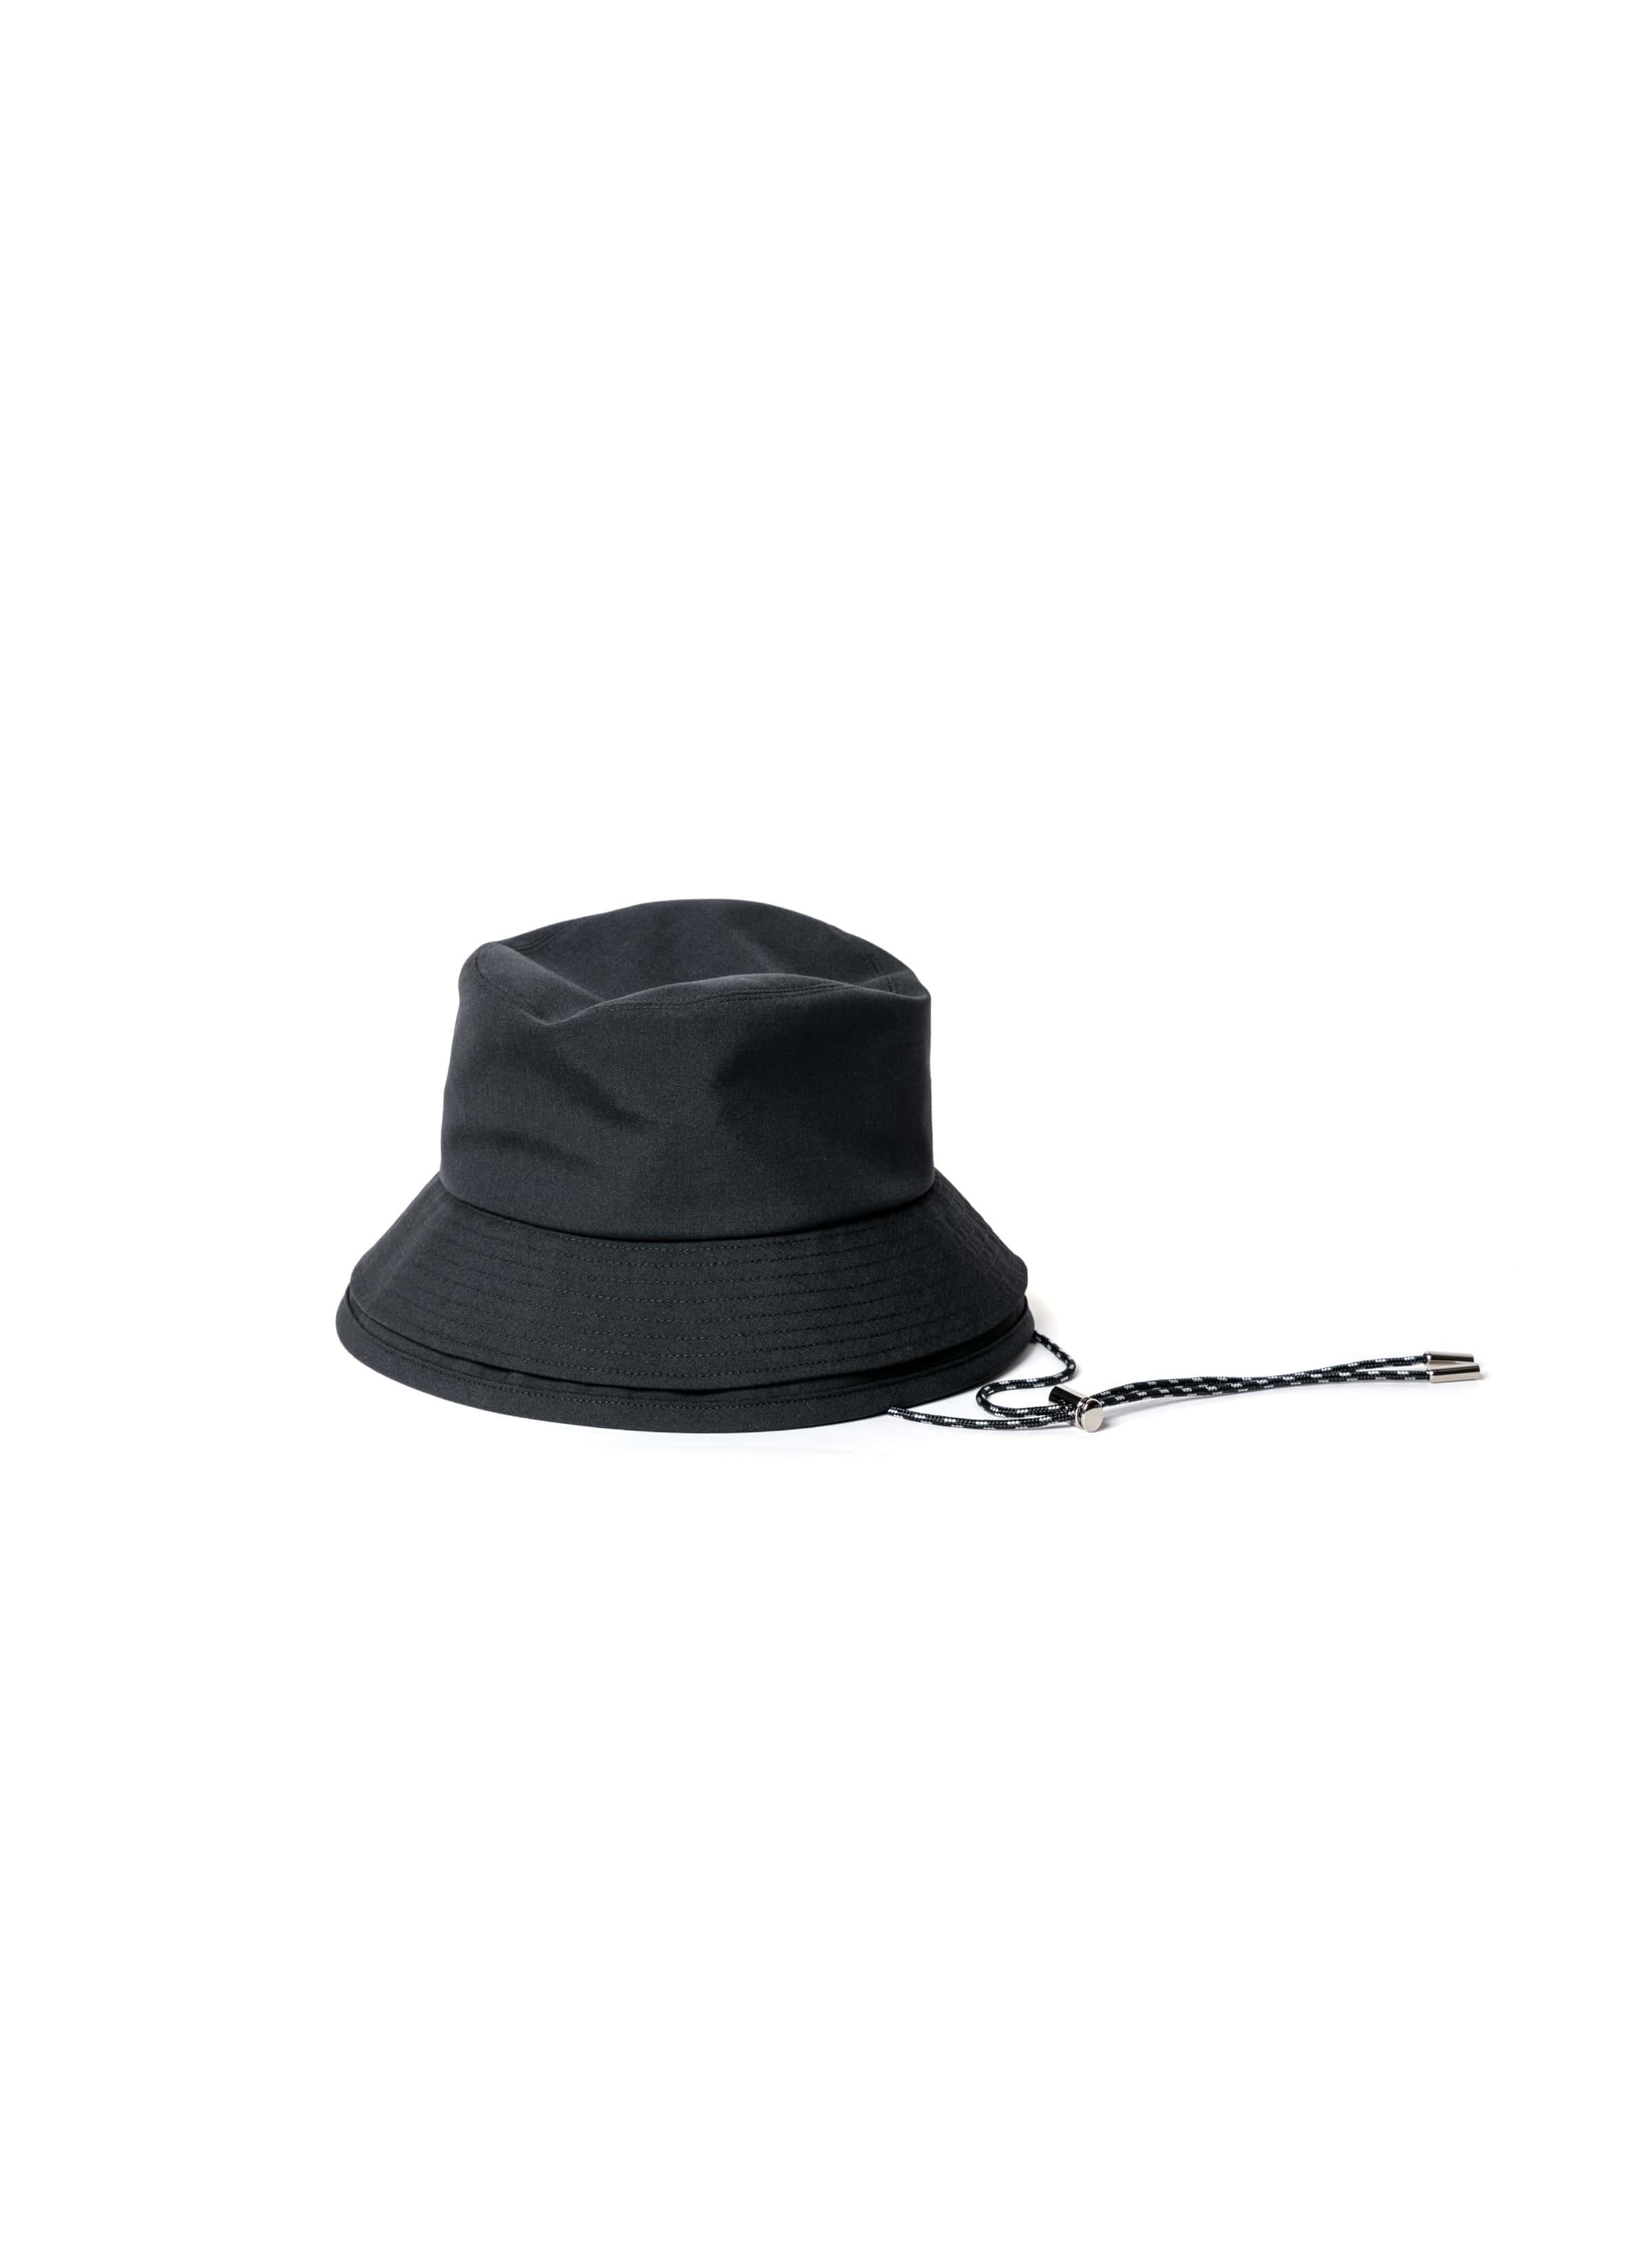 Double Brim Hat / Suiting 詳細画像 BLACK 1